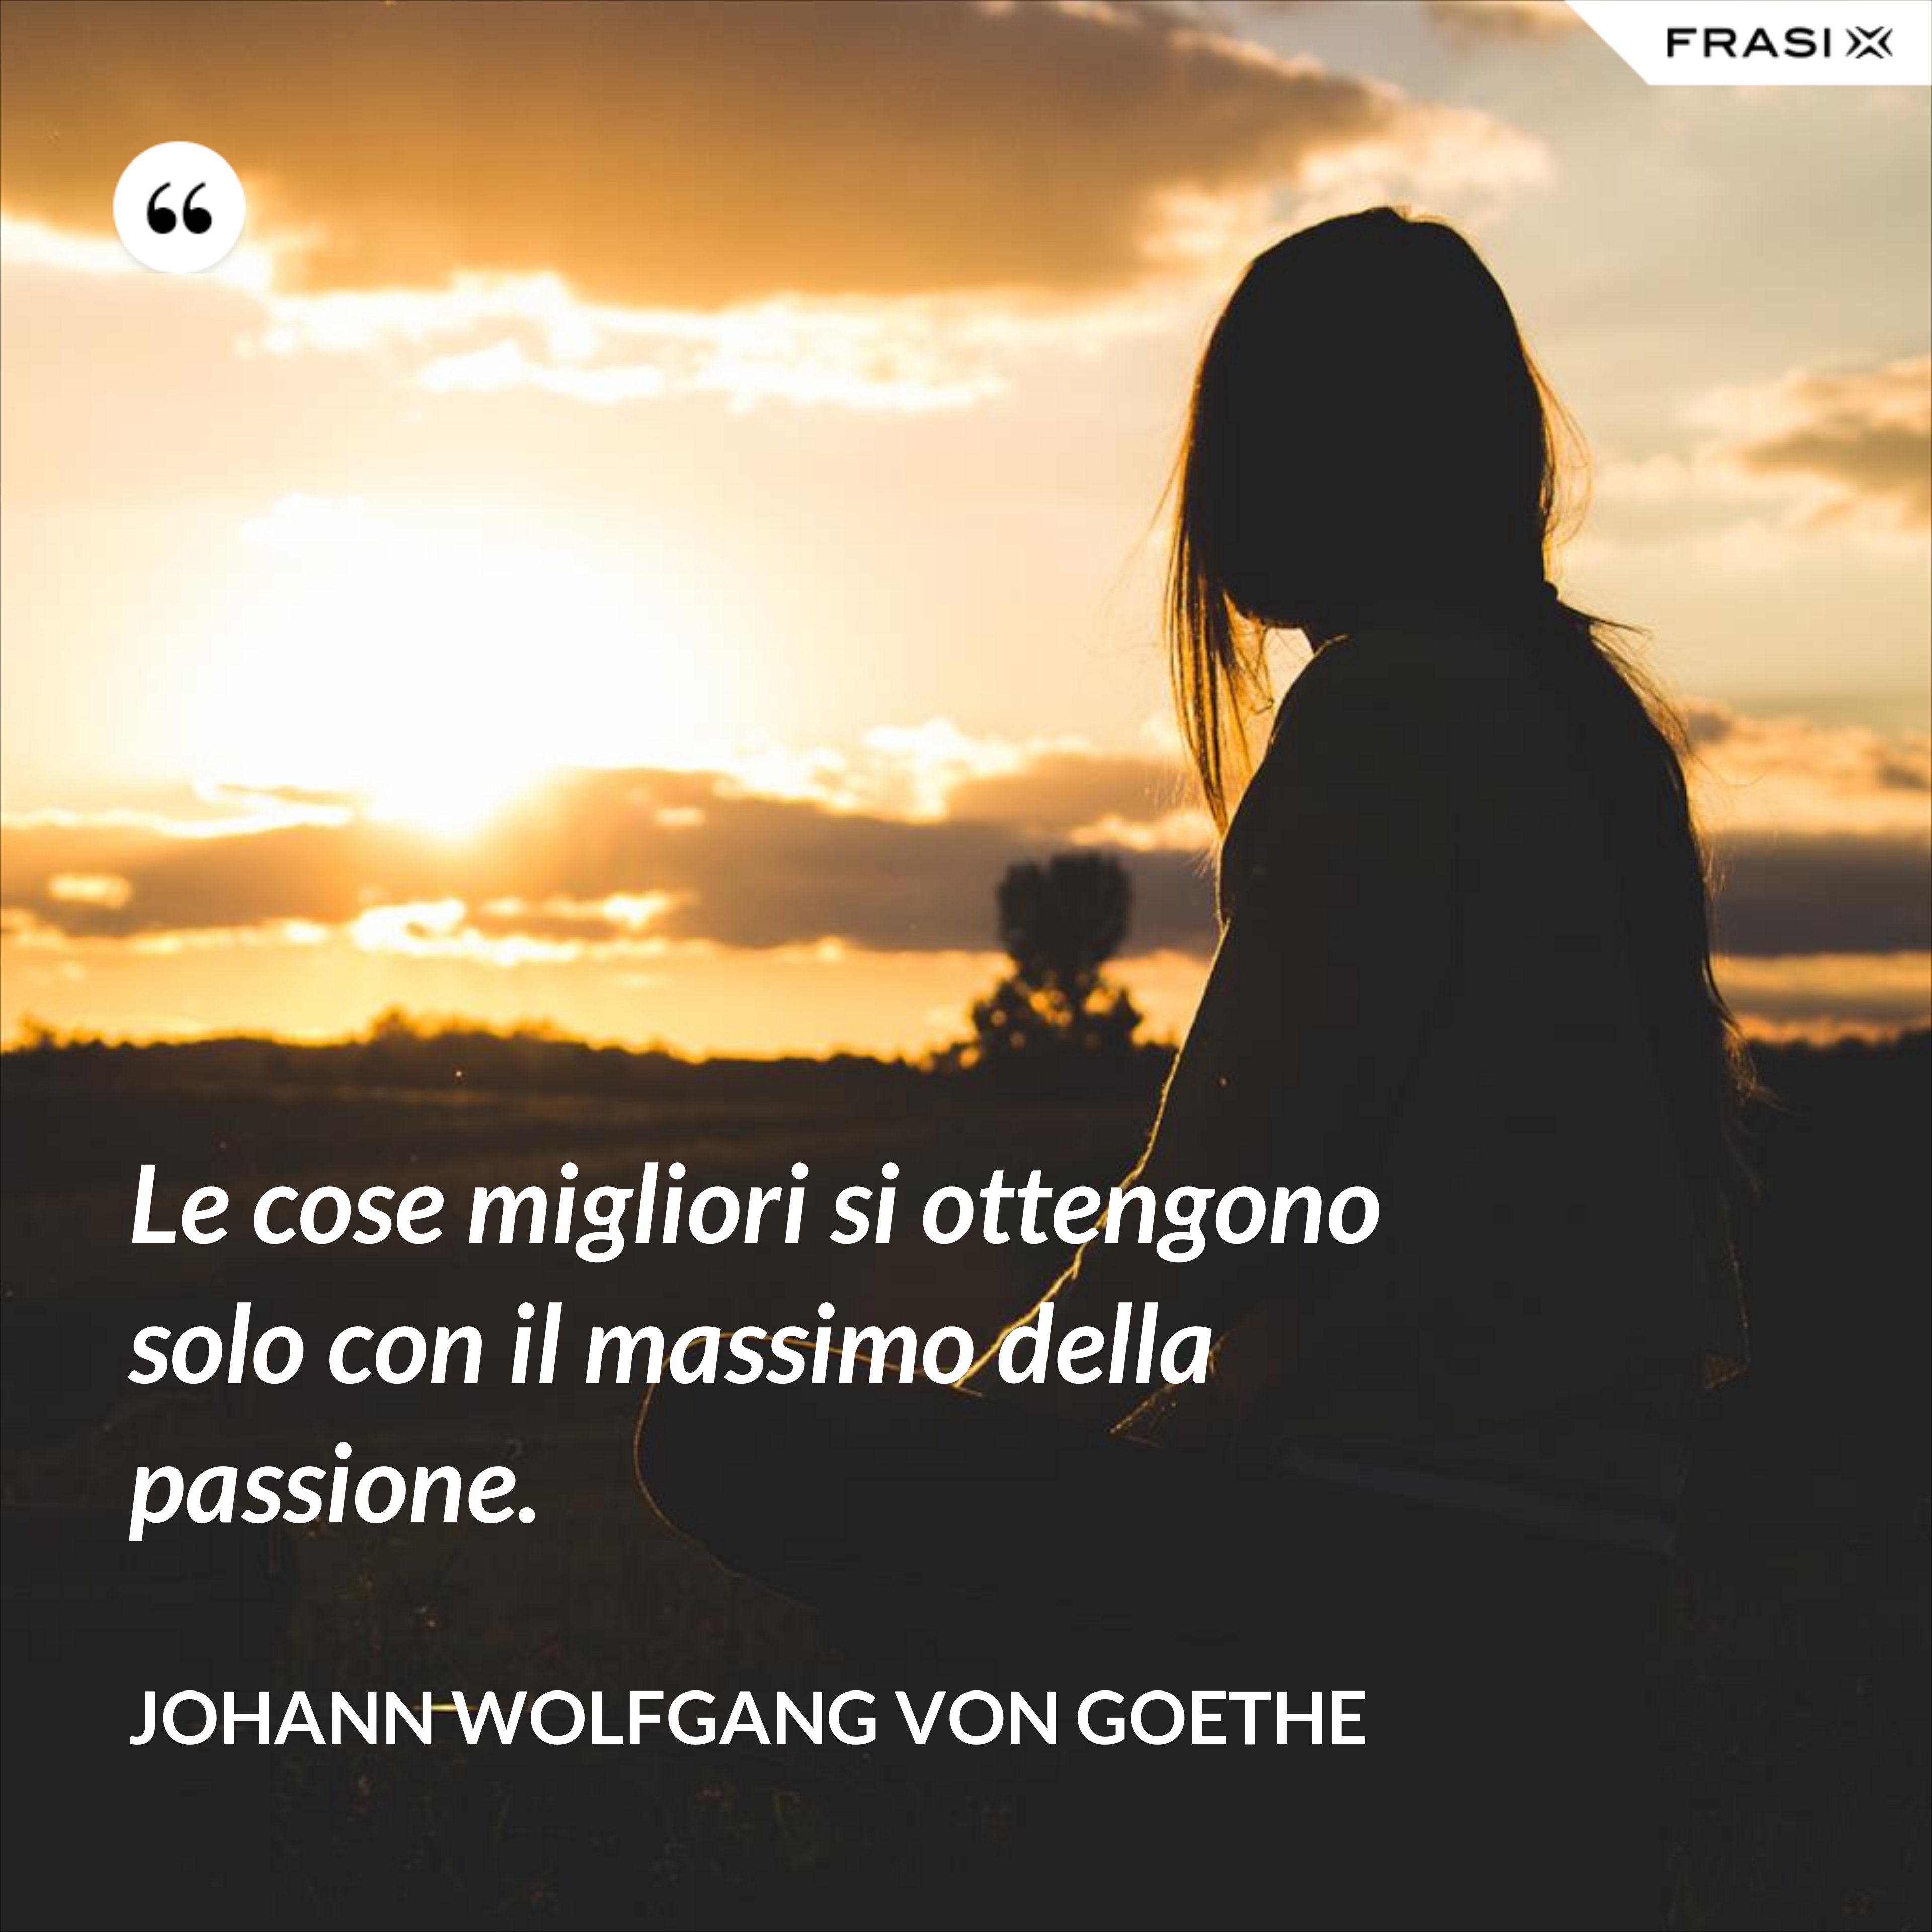 Le cose migliori si ottengono solo con il massimo della passione. - Johann Wolfgang von Goethe